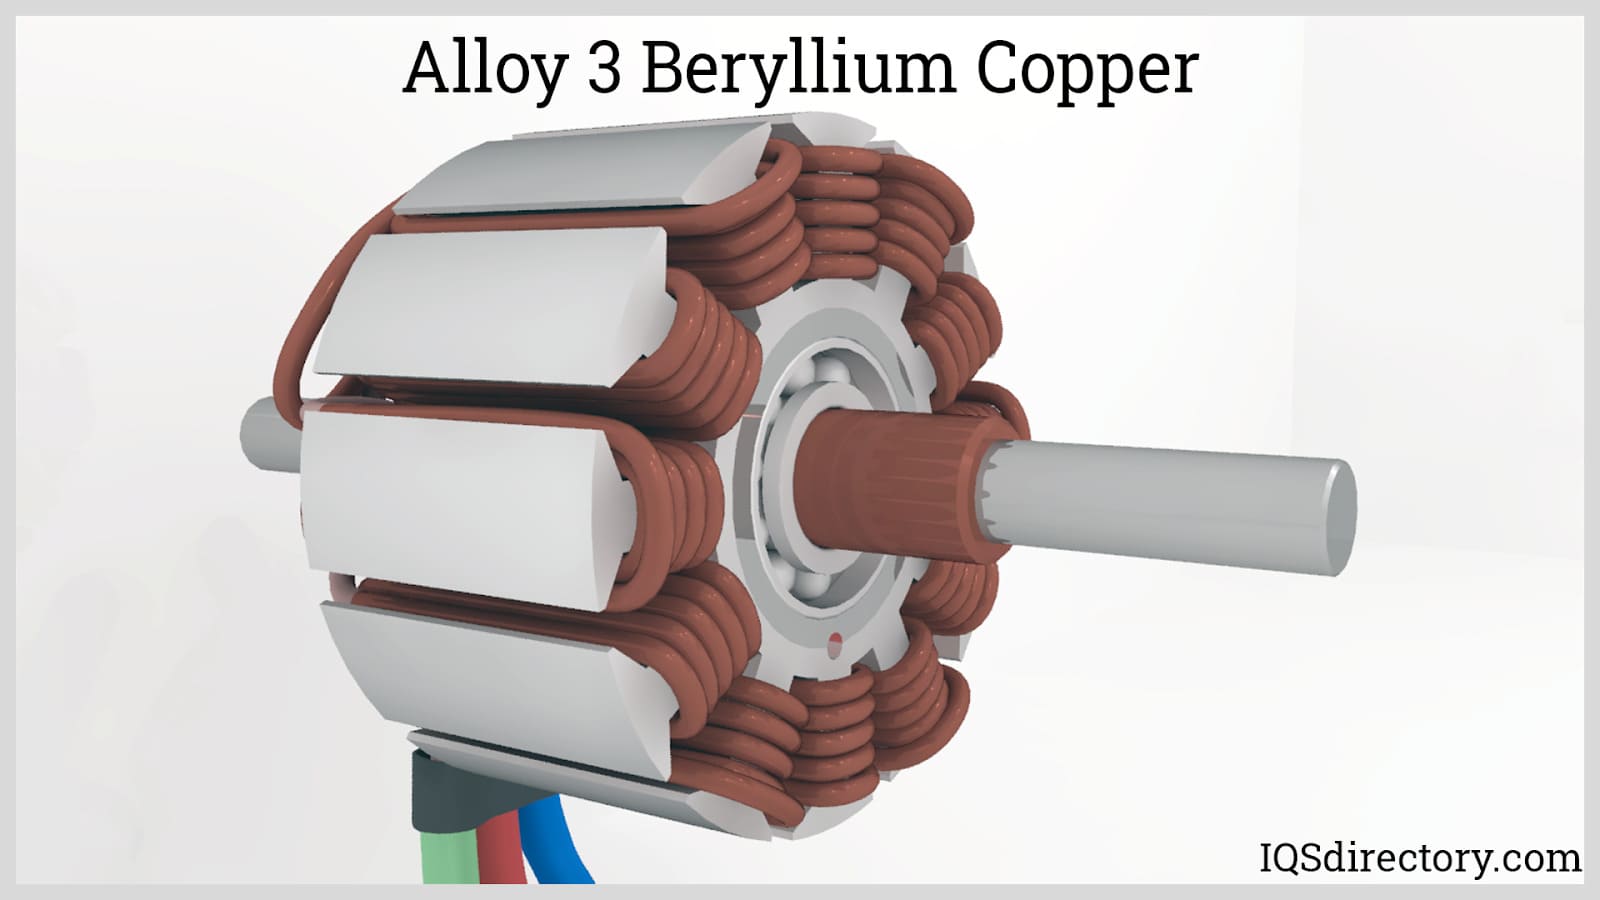 Alloy 3 Beryllium Copper